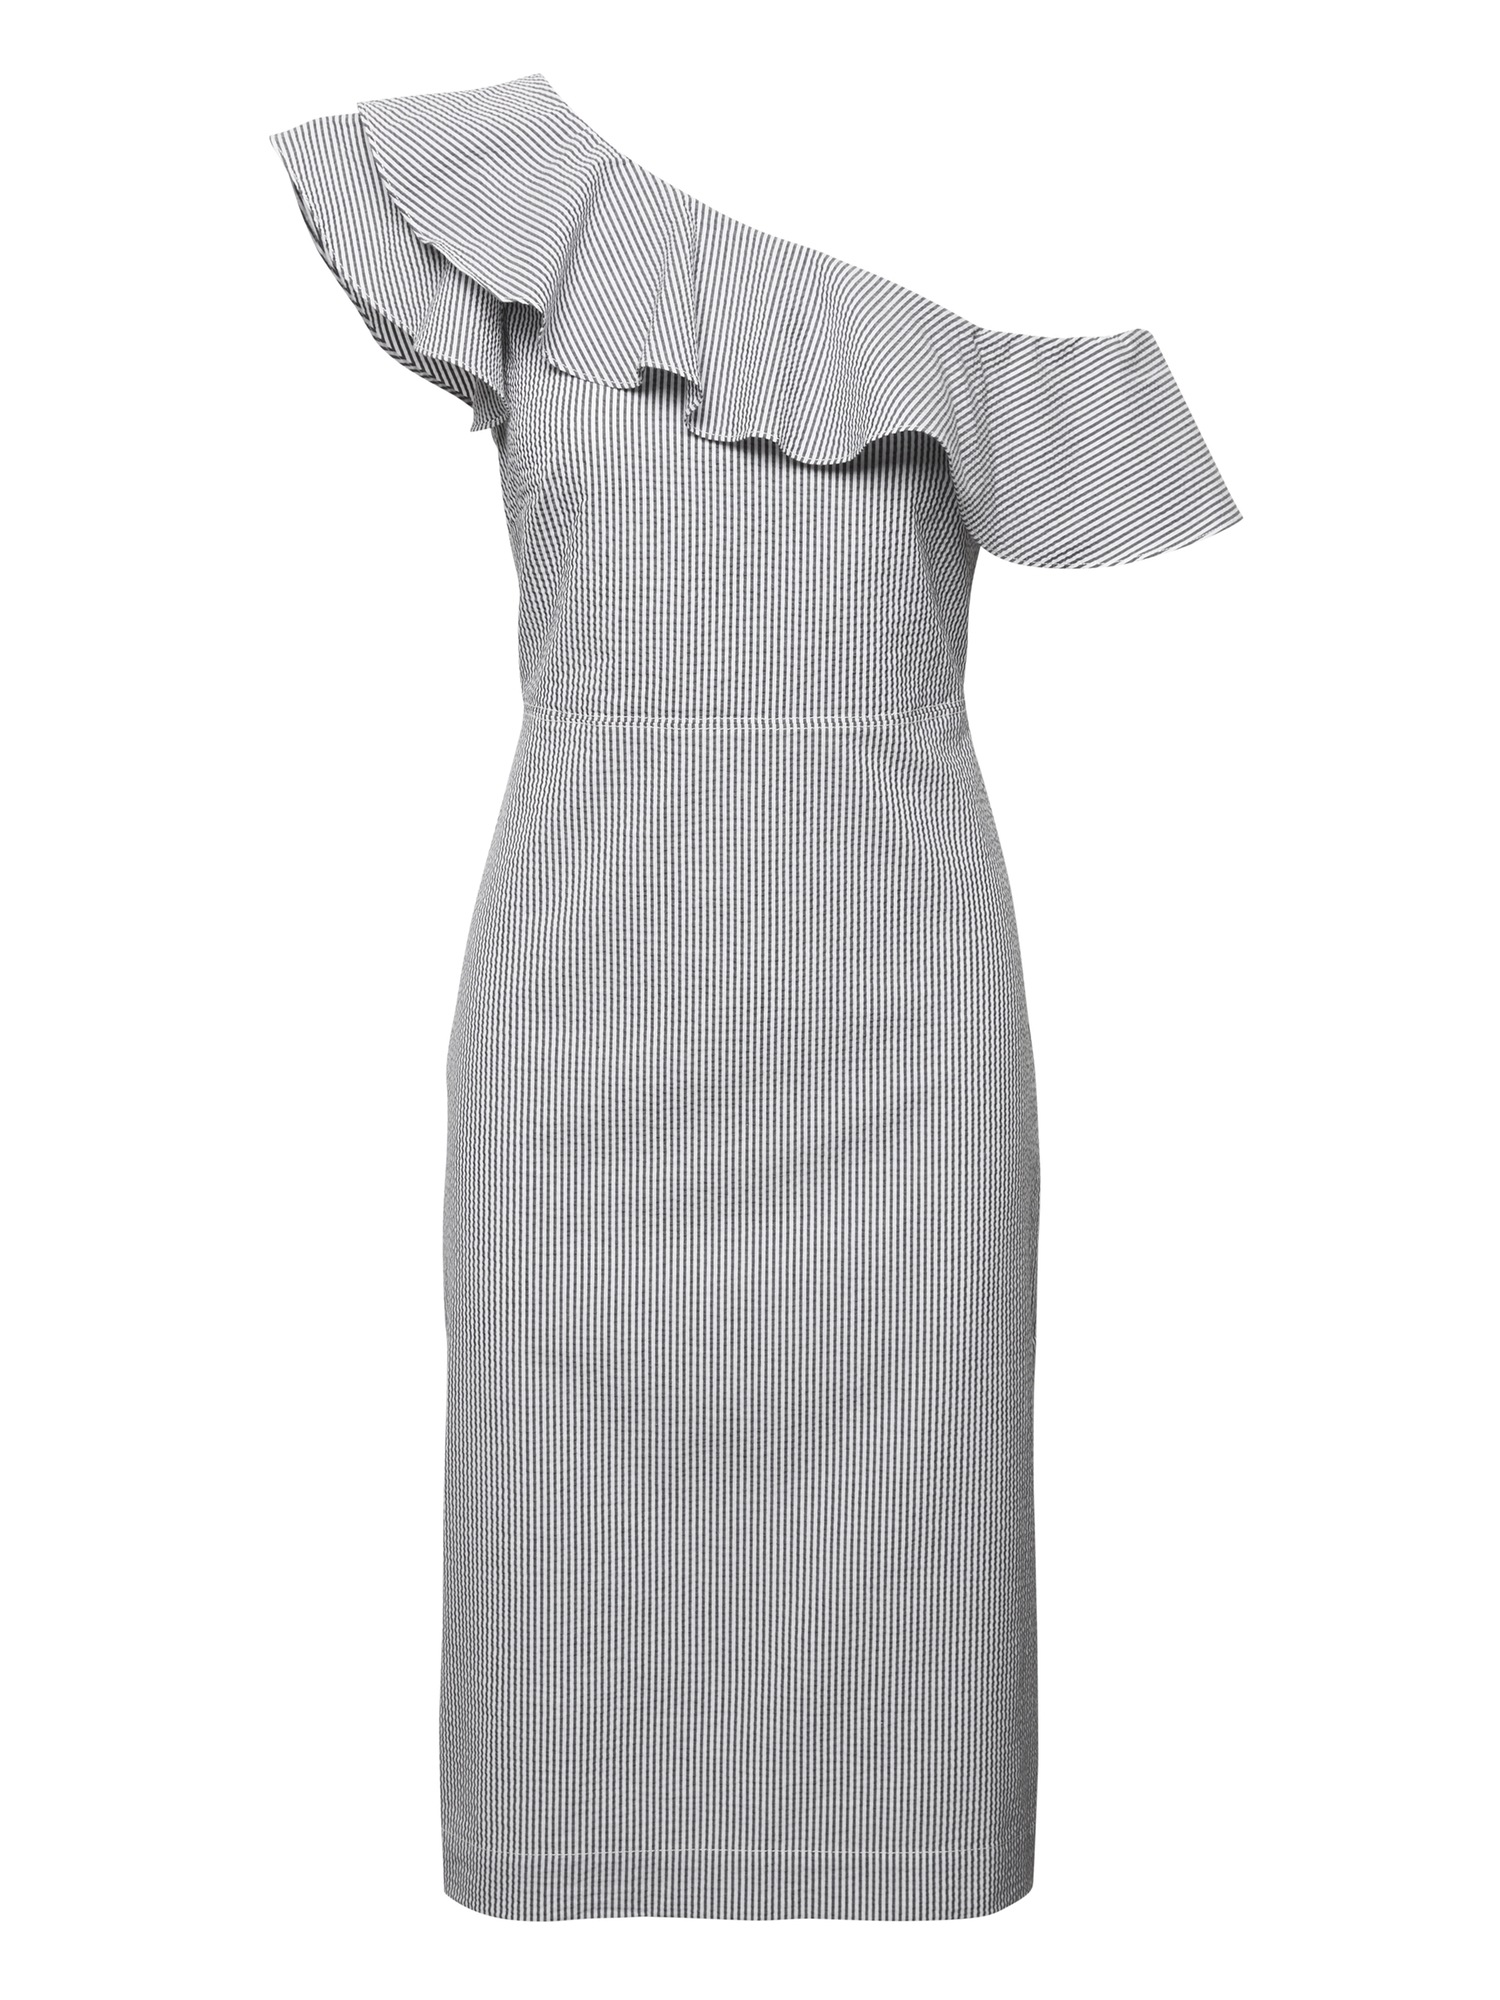 Seersucker One-Shoulder Dress